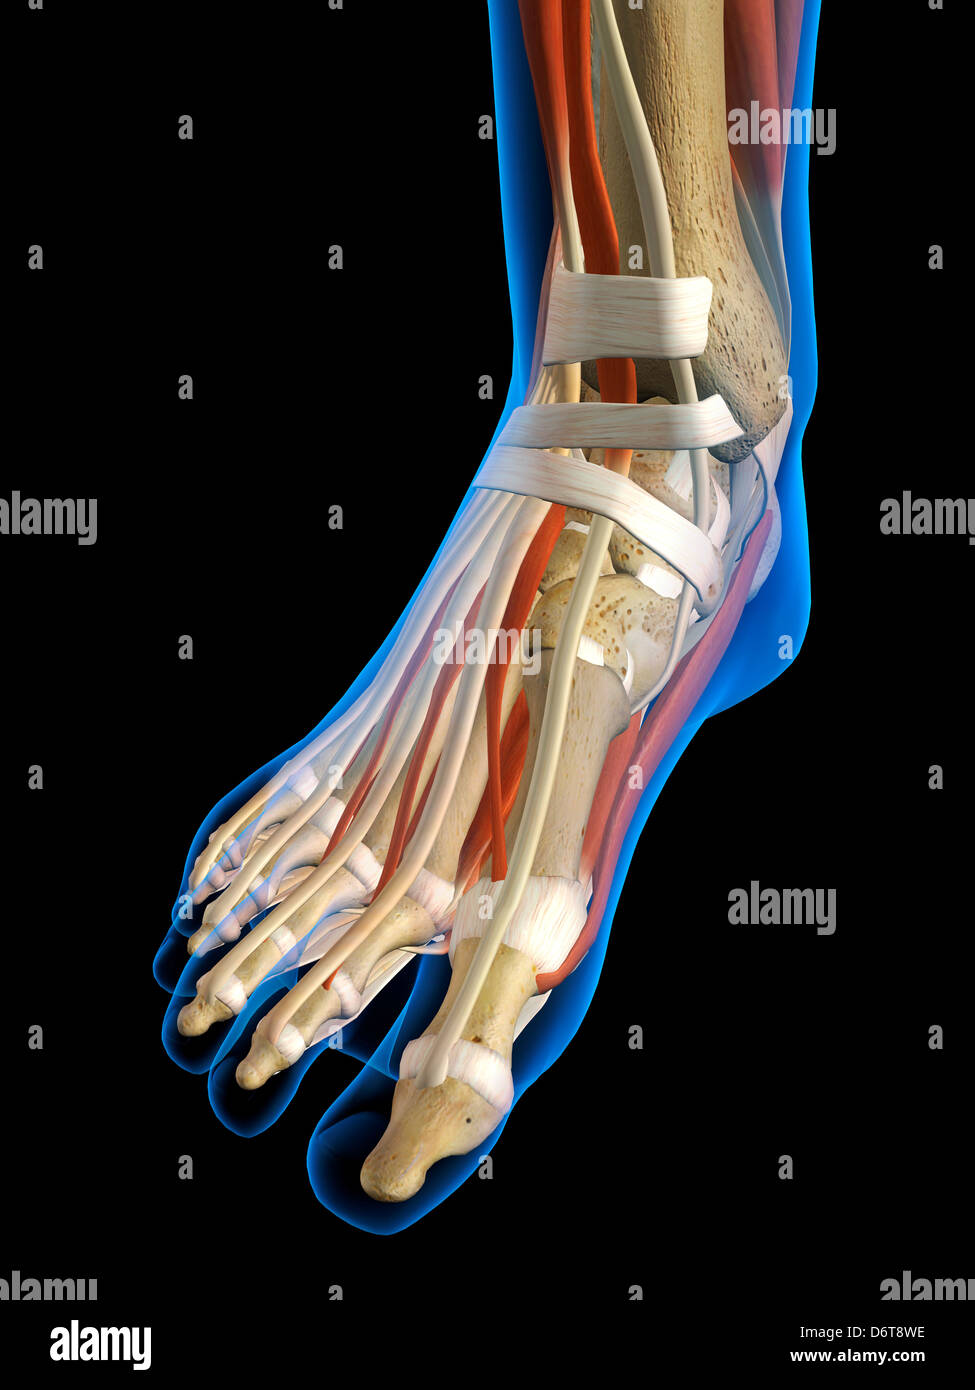 Vista frontale X-Ray femmina piede caviglia ossa muscoli legamenti completa a colori in 3D al computer illustrazione generati su sfondo nero Foto Stock